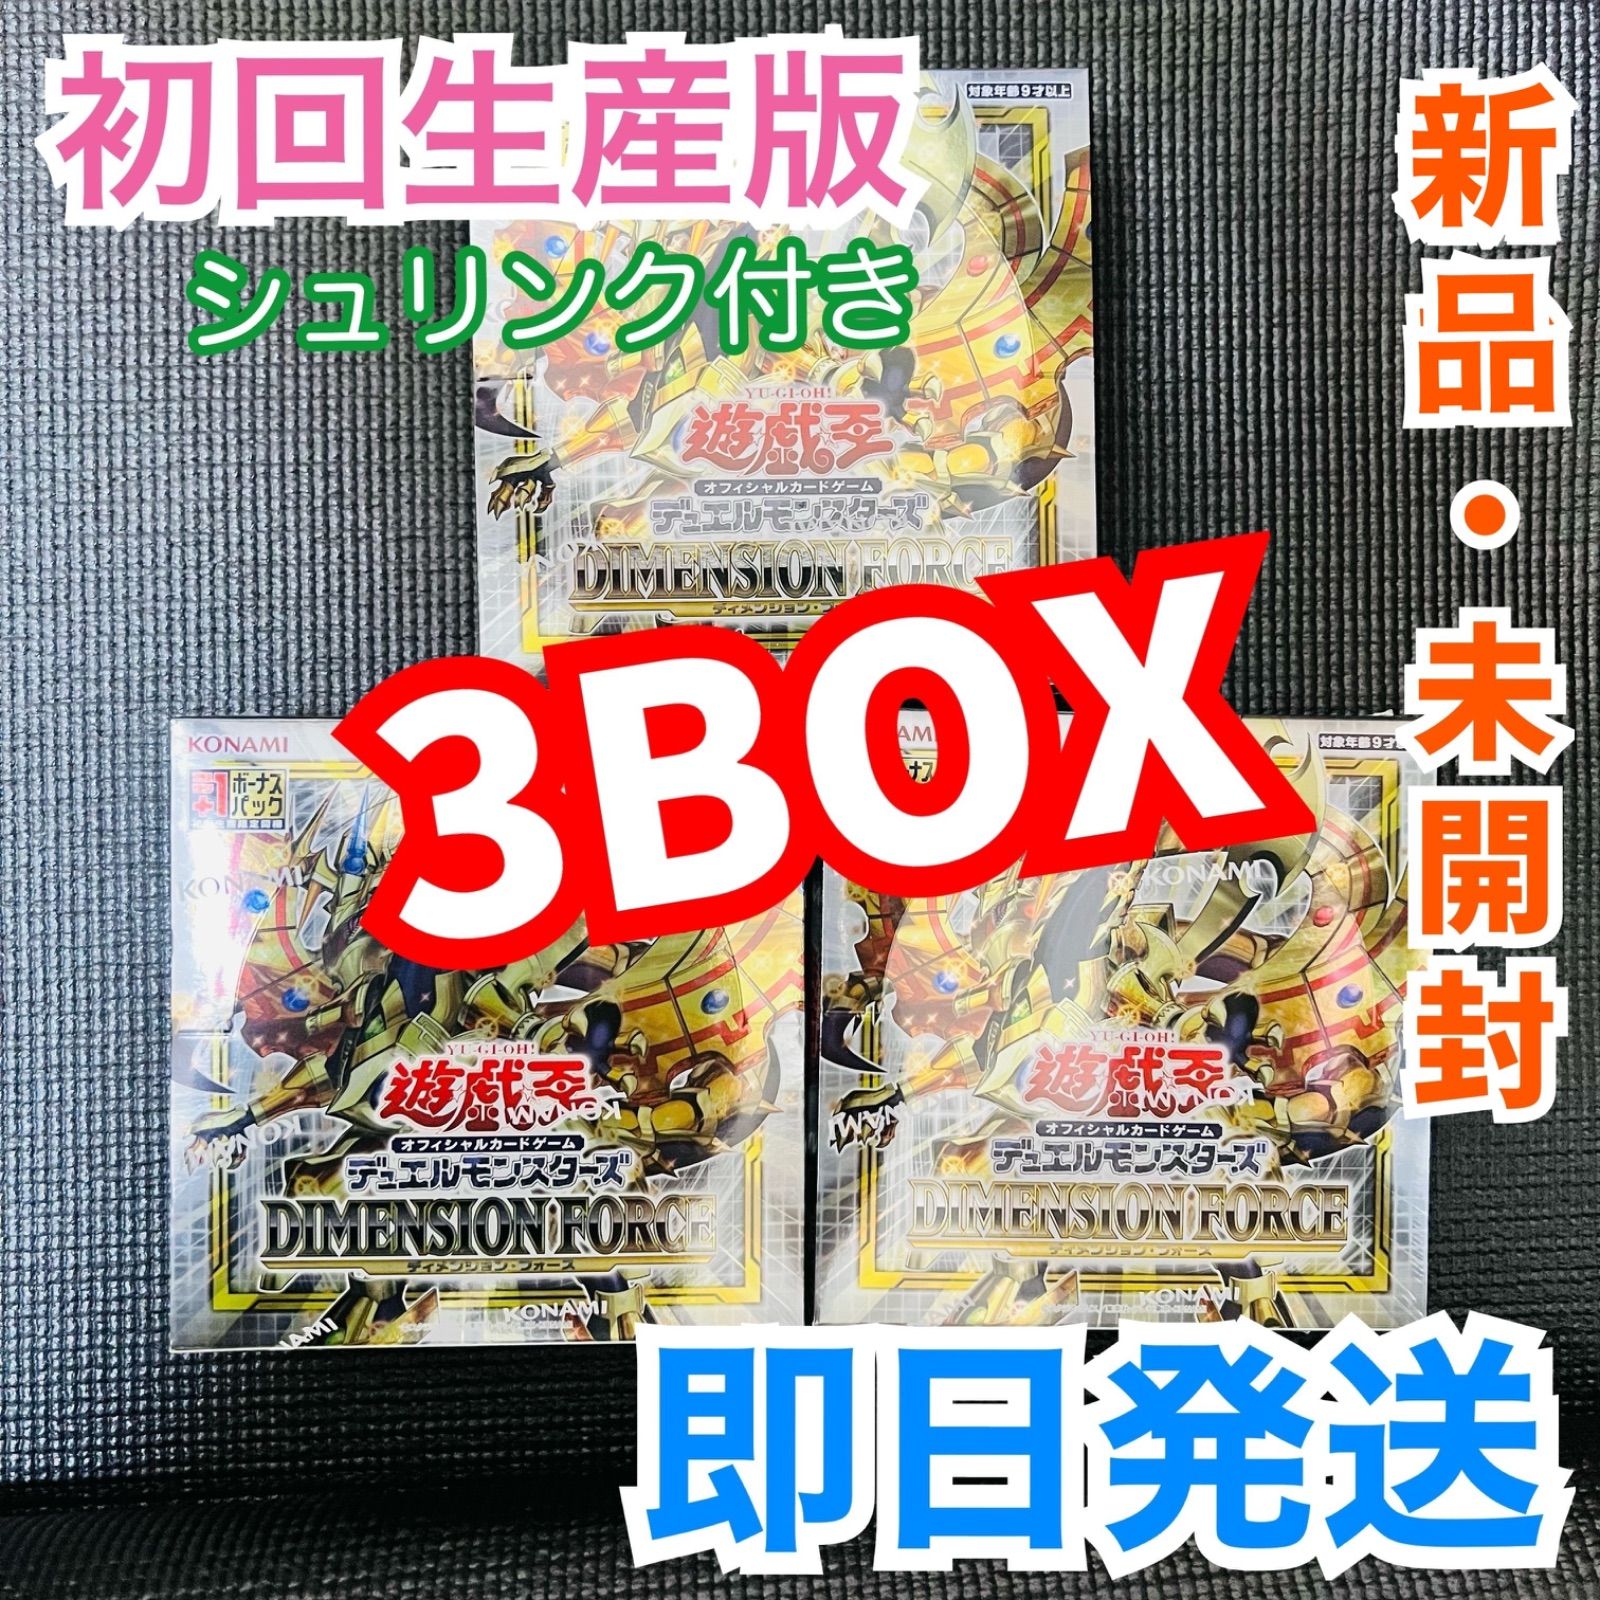 遊戯王 ディメンションフォース3BOX 初回生産版 シュリンク付き www